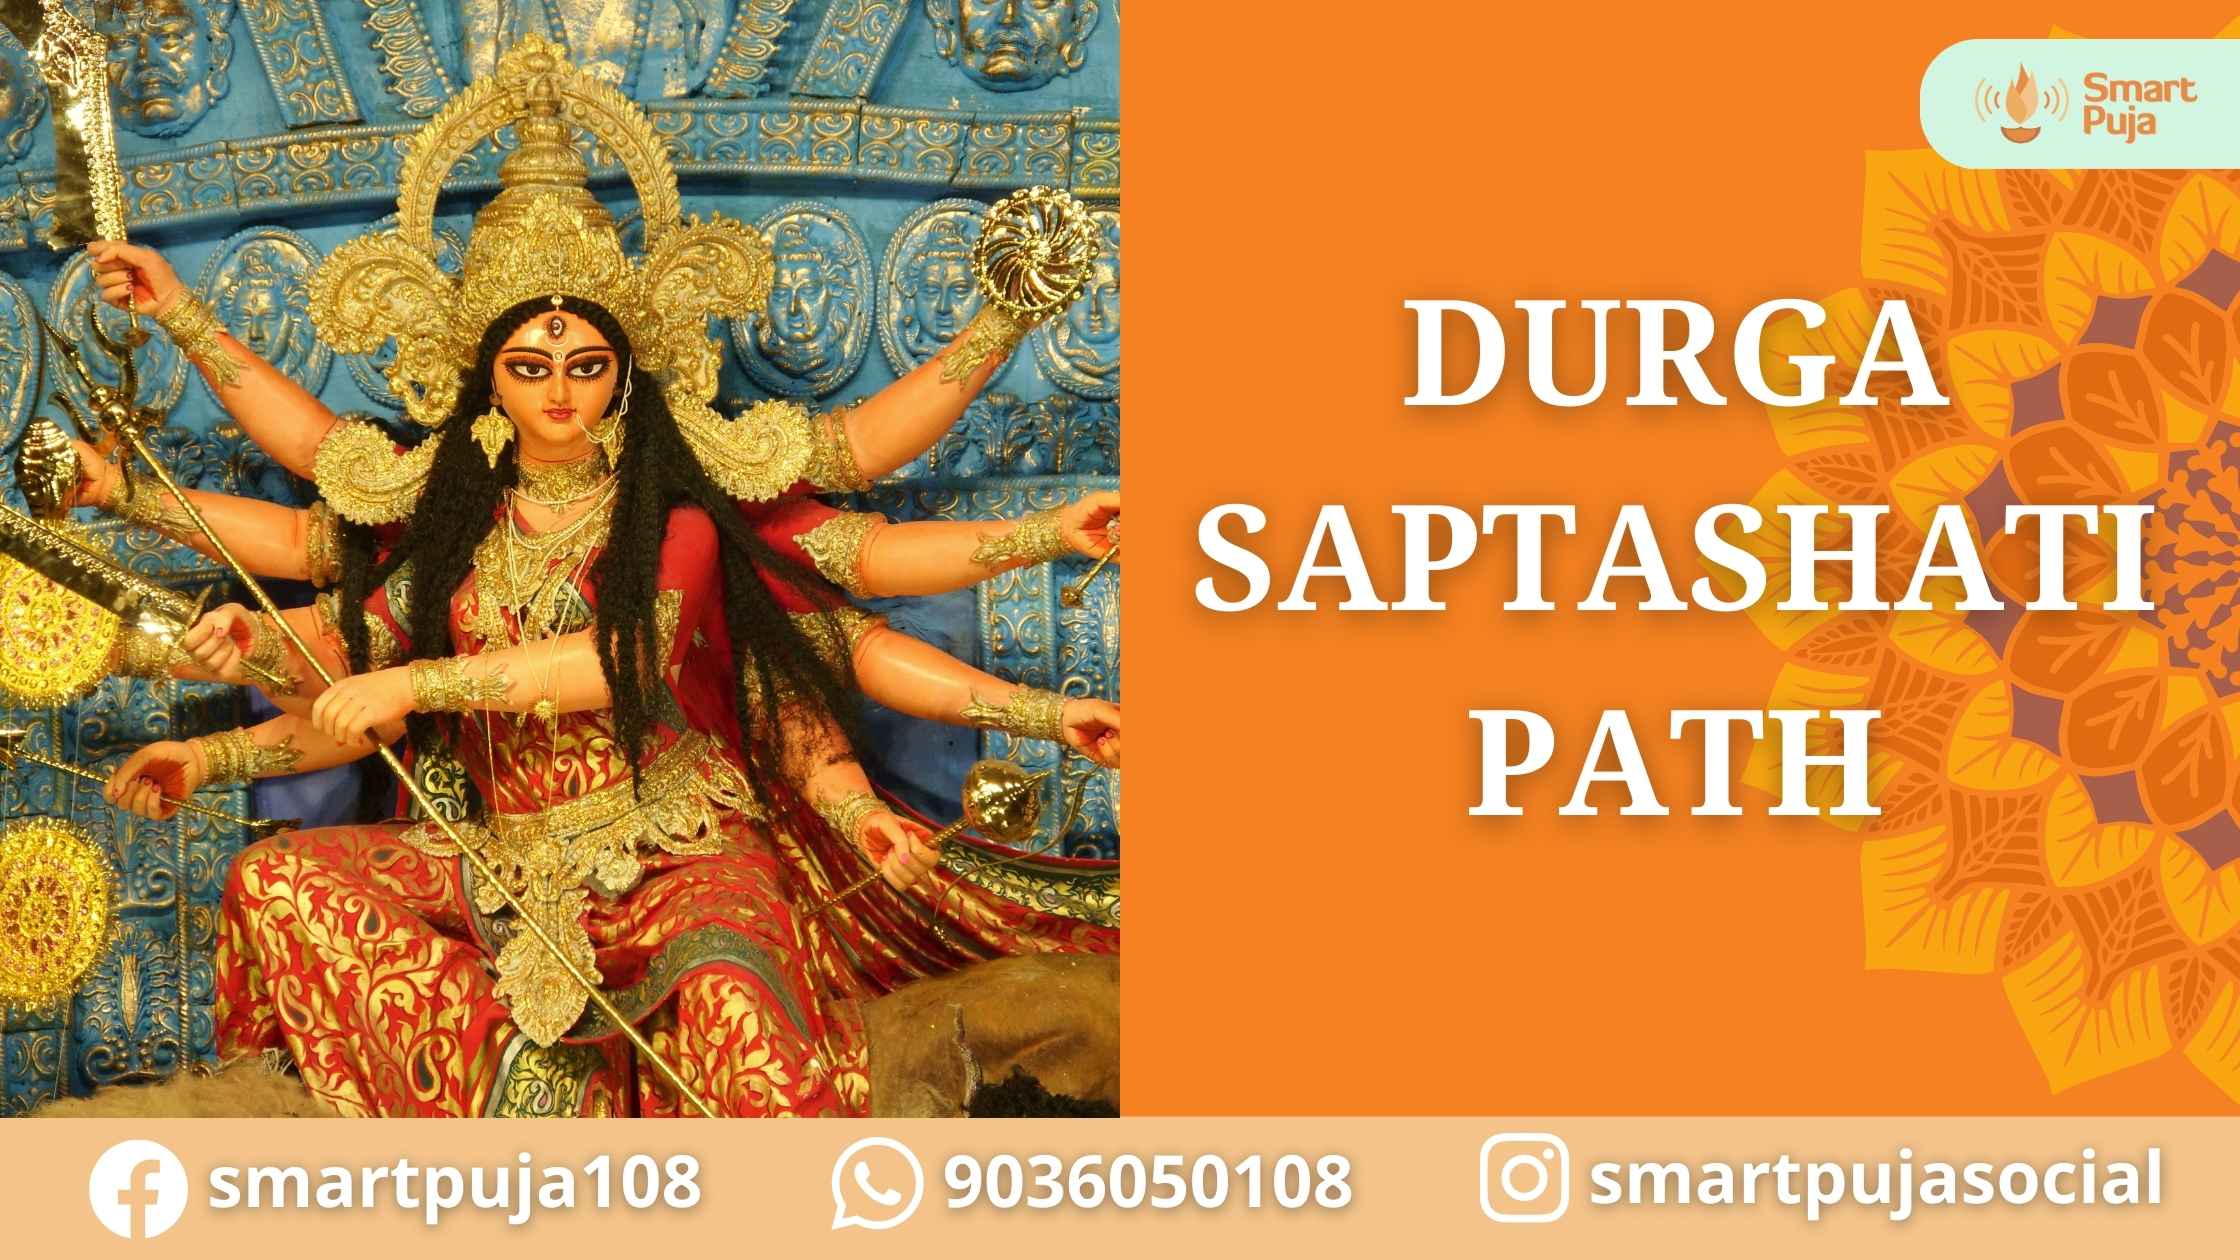 Durga Saptashati Path